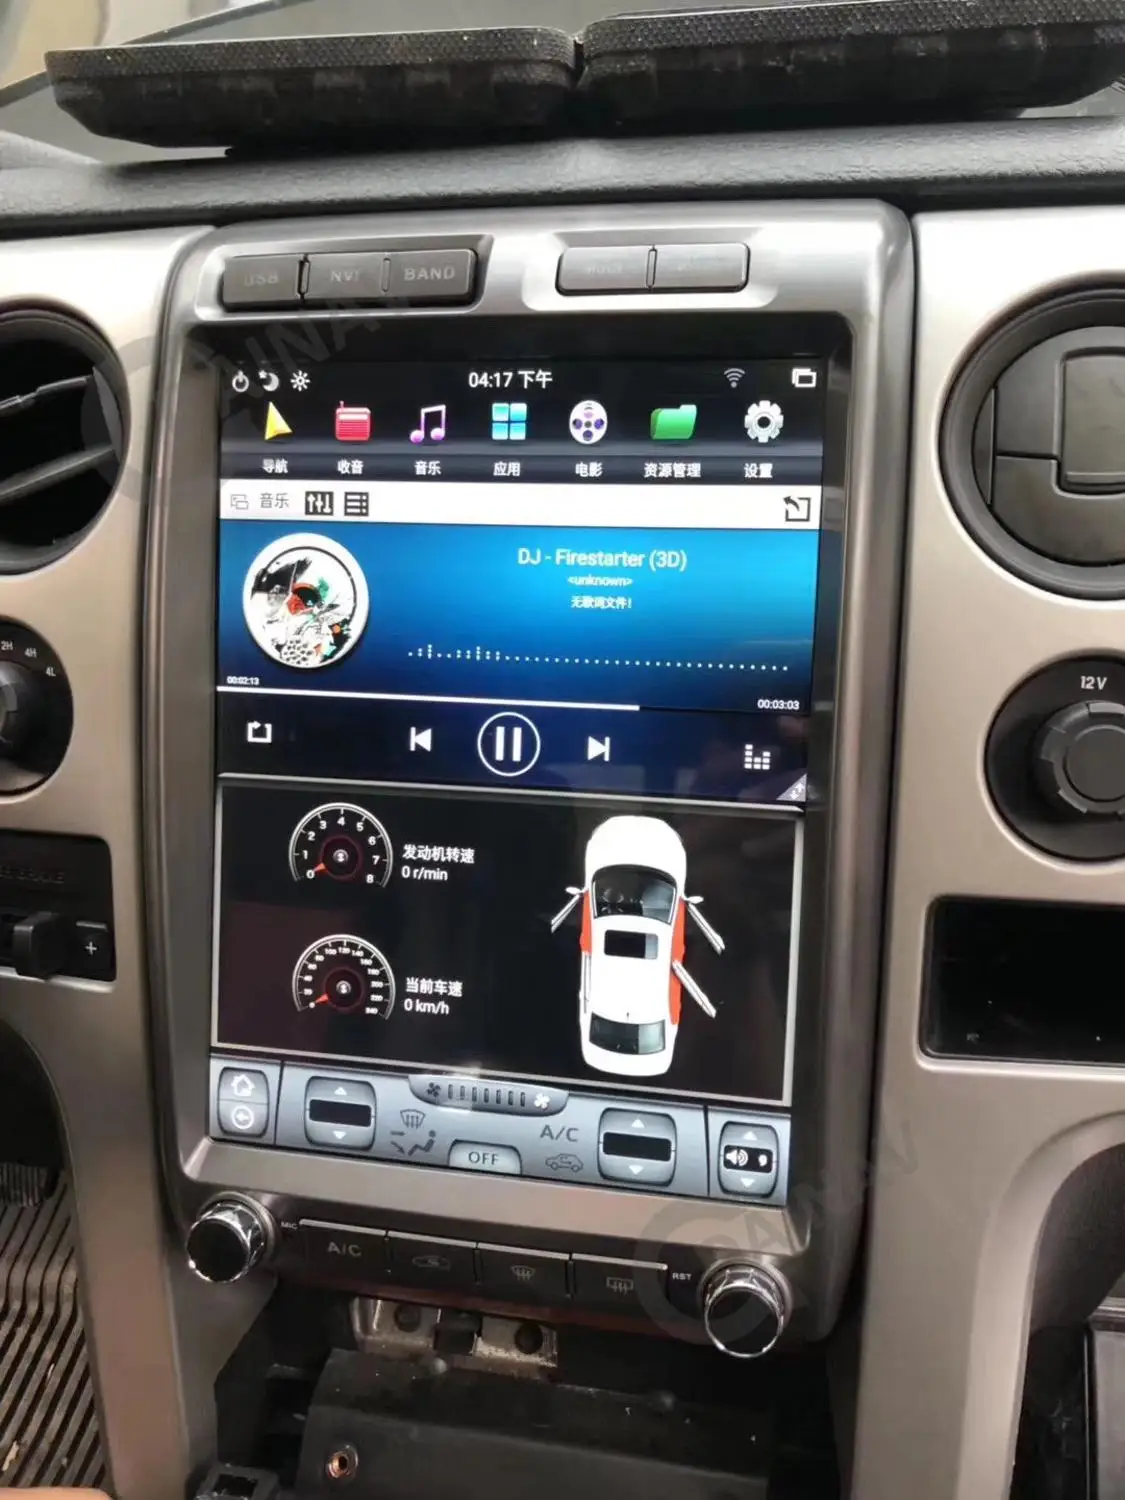 אנכי מסך אנדרואיד רכב רדיו ניווט GPS עבור פורד f-150 xlt 2013 טסלה סגנון רכב מולטימדיה DVD נגן